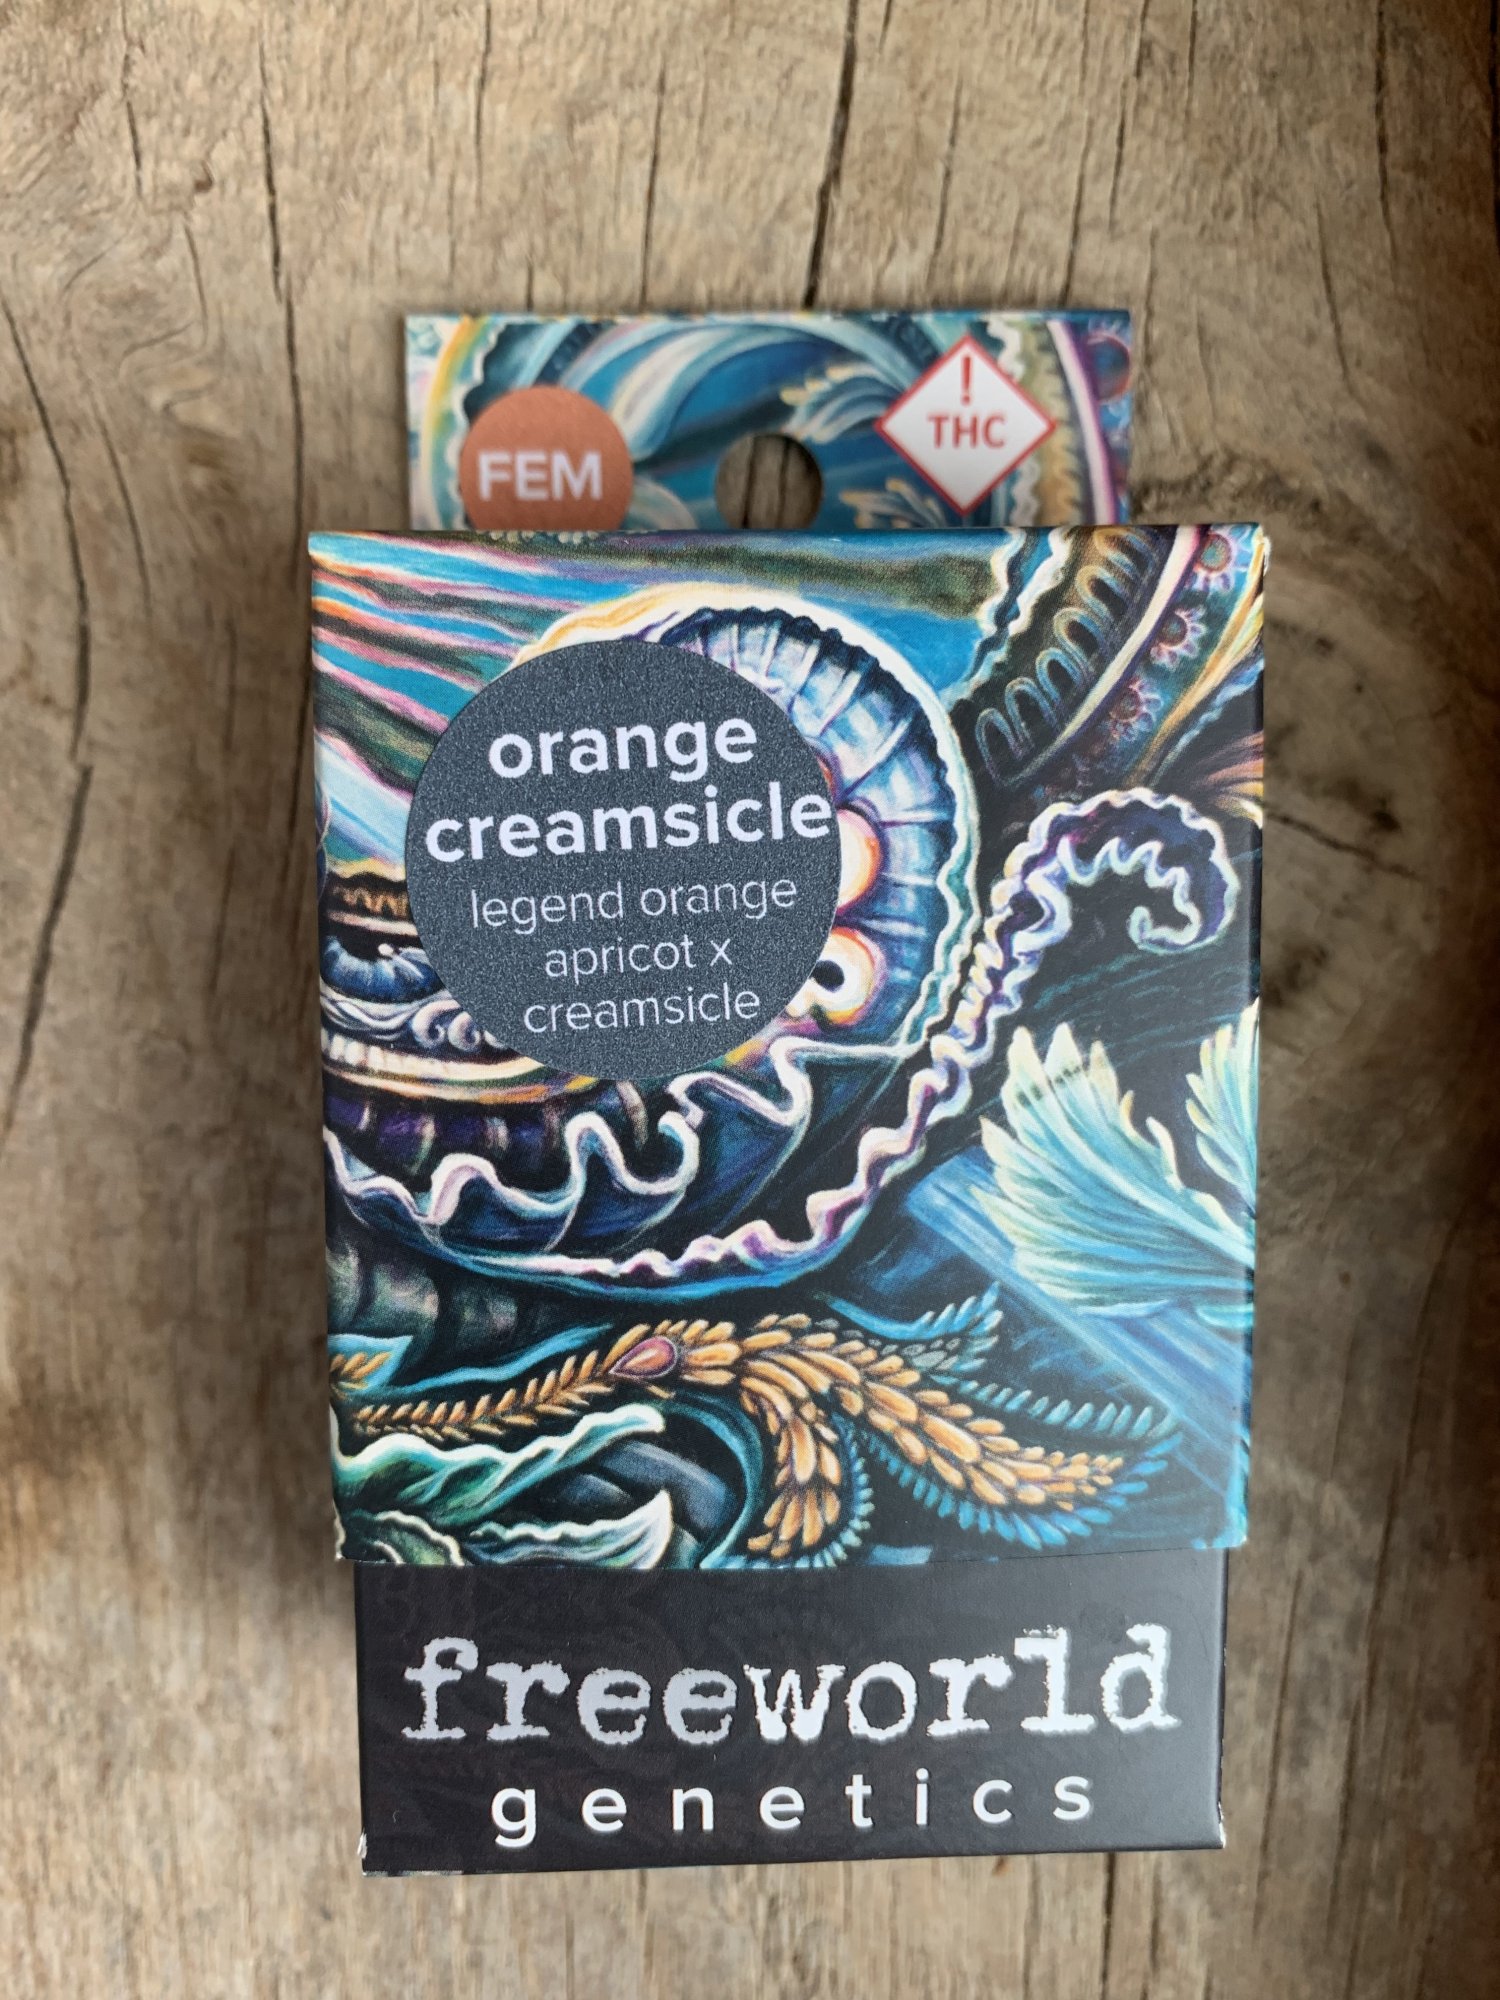 Orange creamsicle seeds from freeworld genetics